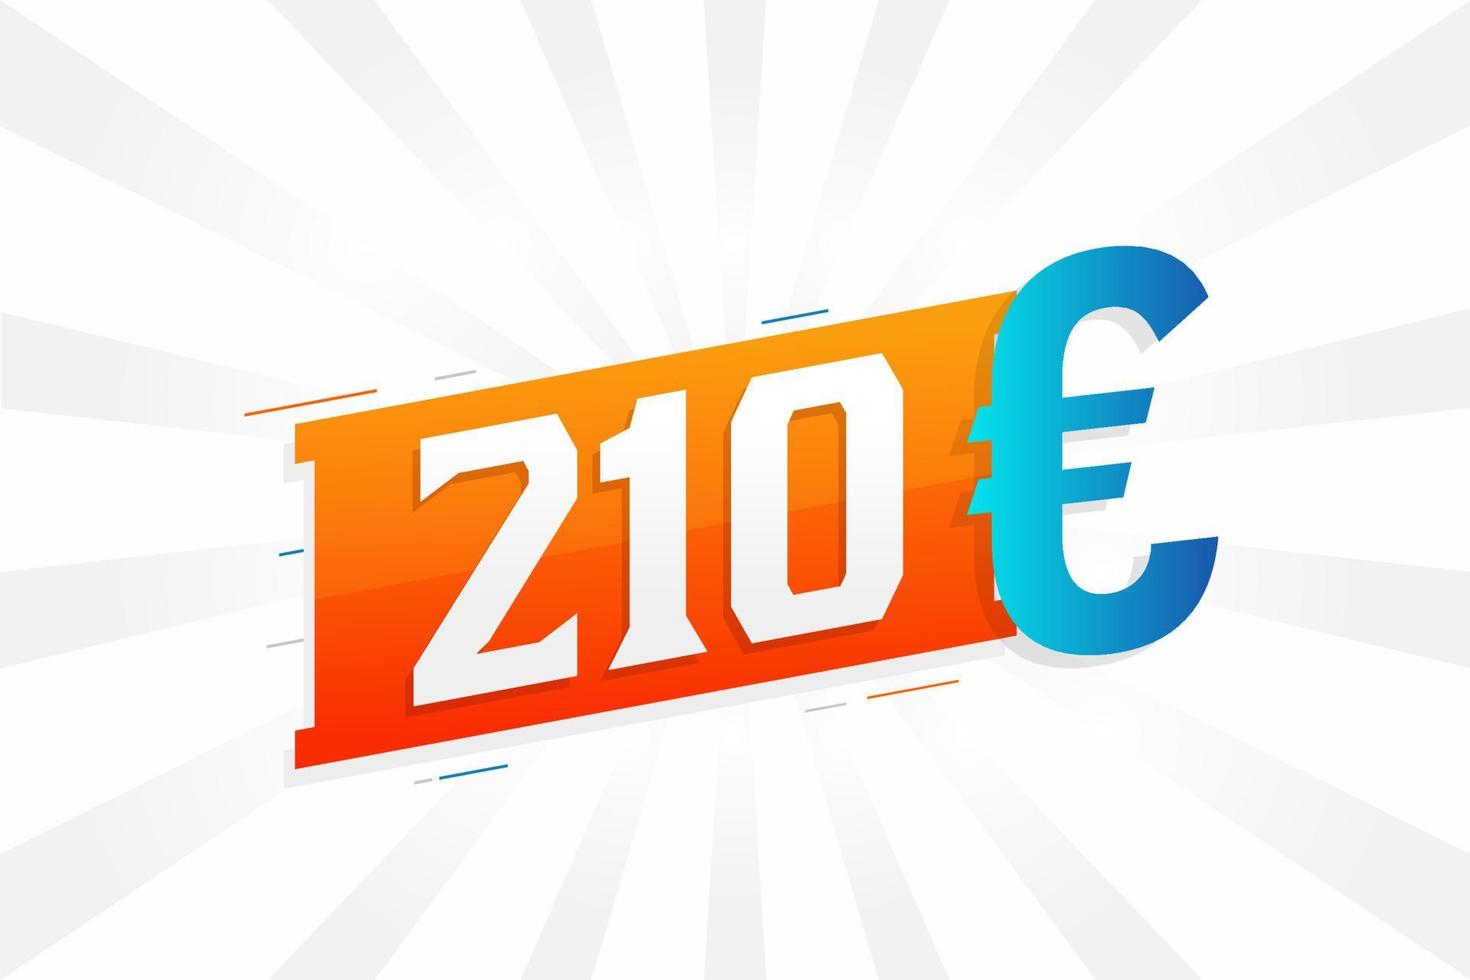 210-Euro-Währungsvektor-Textsymbol. 210 Euro Geldvorratvektor der Europäischen Union vektor